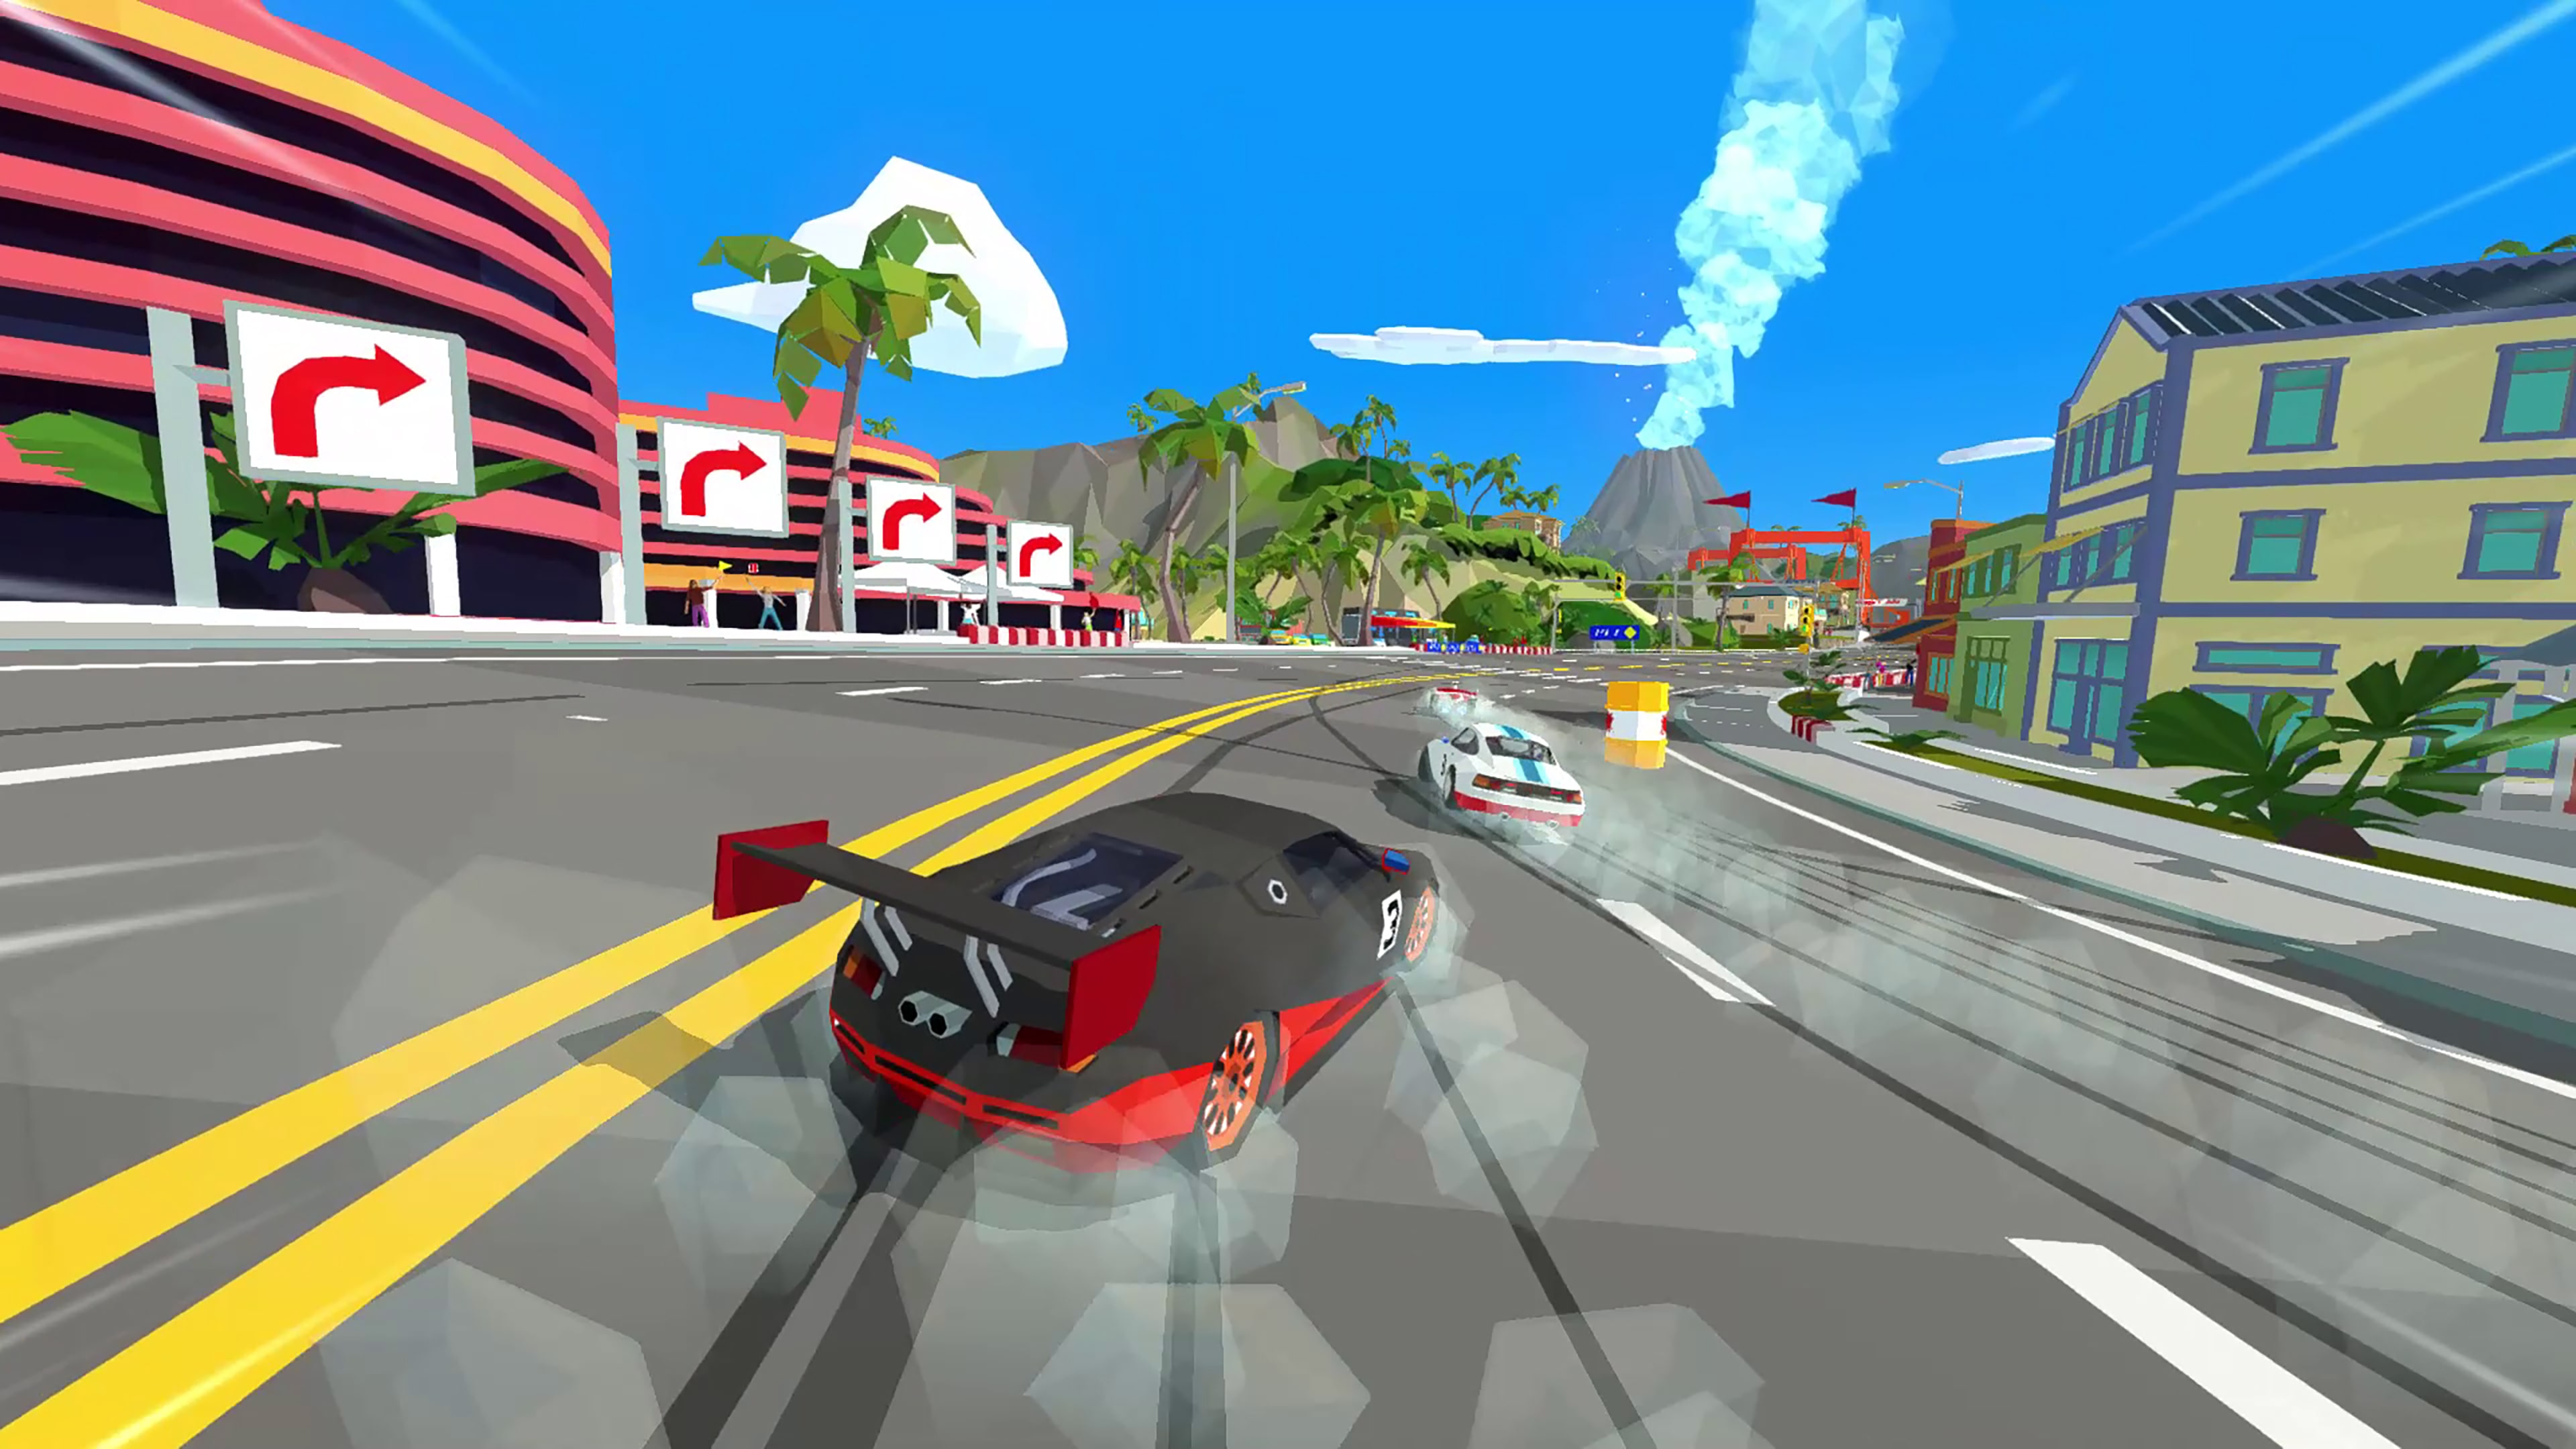 Hotshot Racing, novo jogo de corrida com inspirações retrô, é anunciado